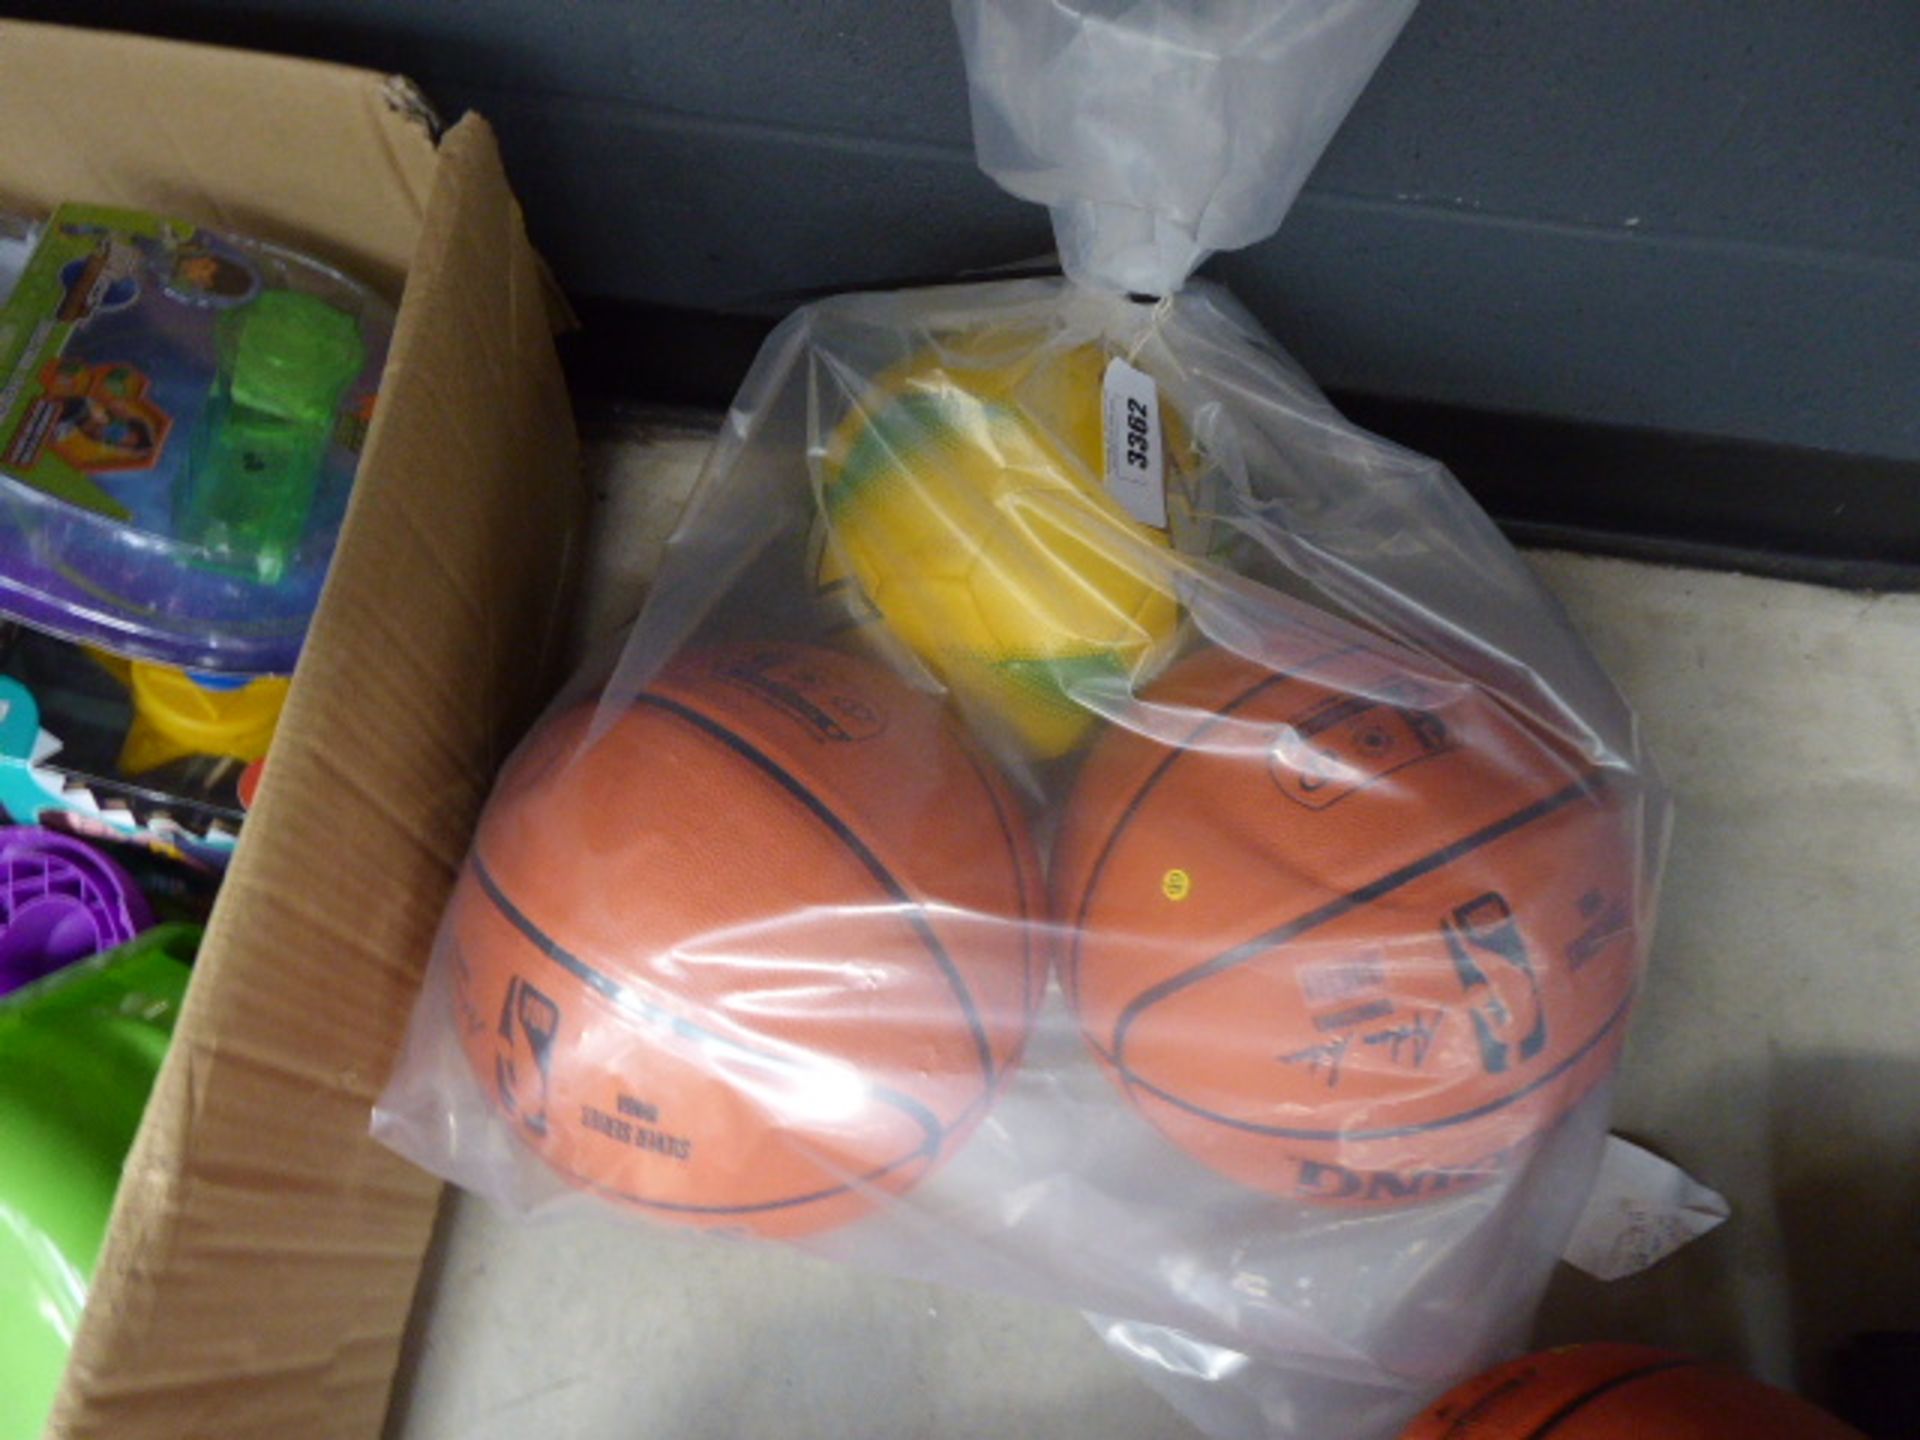 2 NBA basketballs and a yellow Mitre football